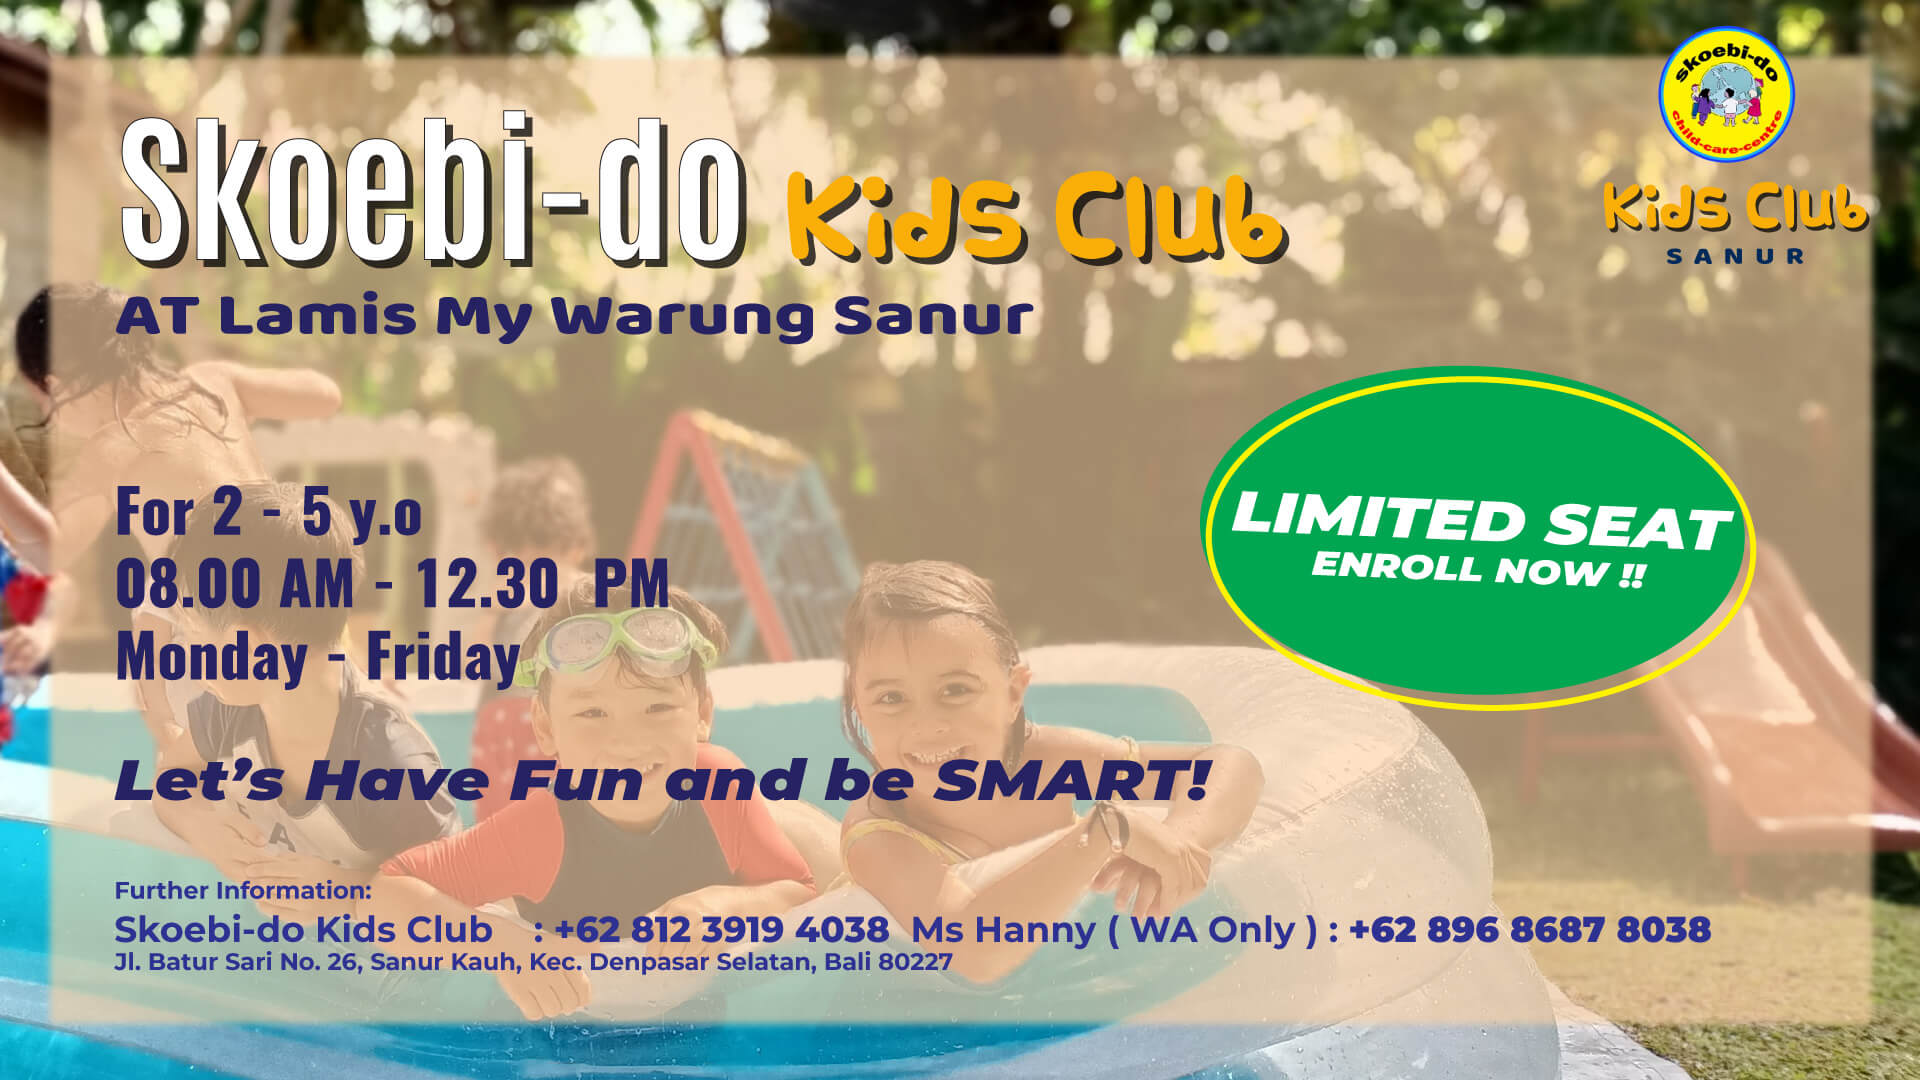 skoebi-do kids club schedule